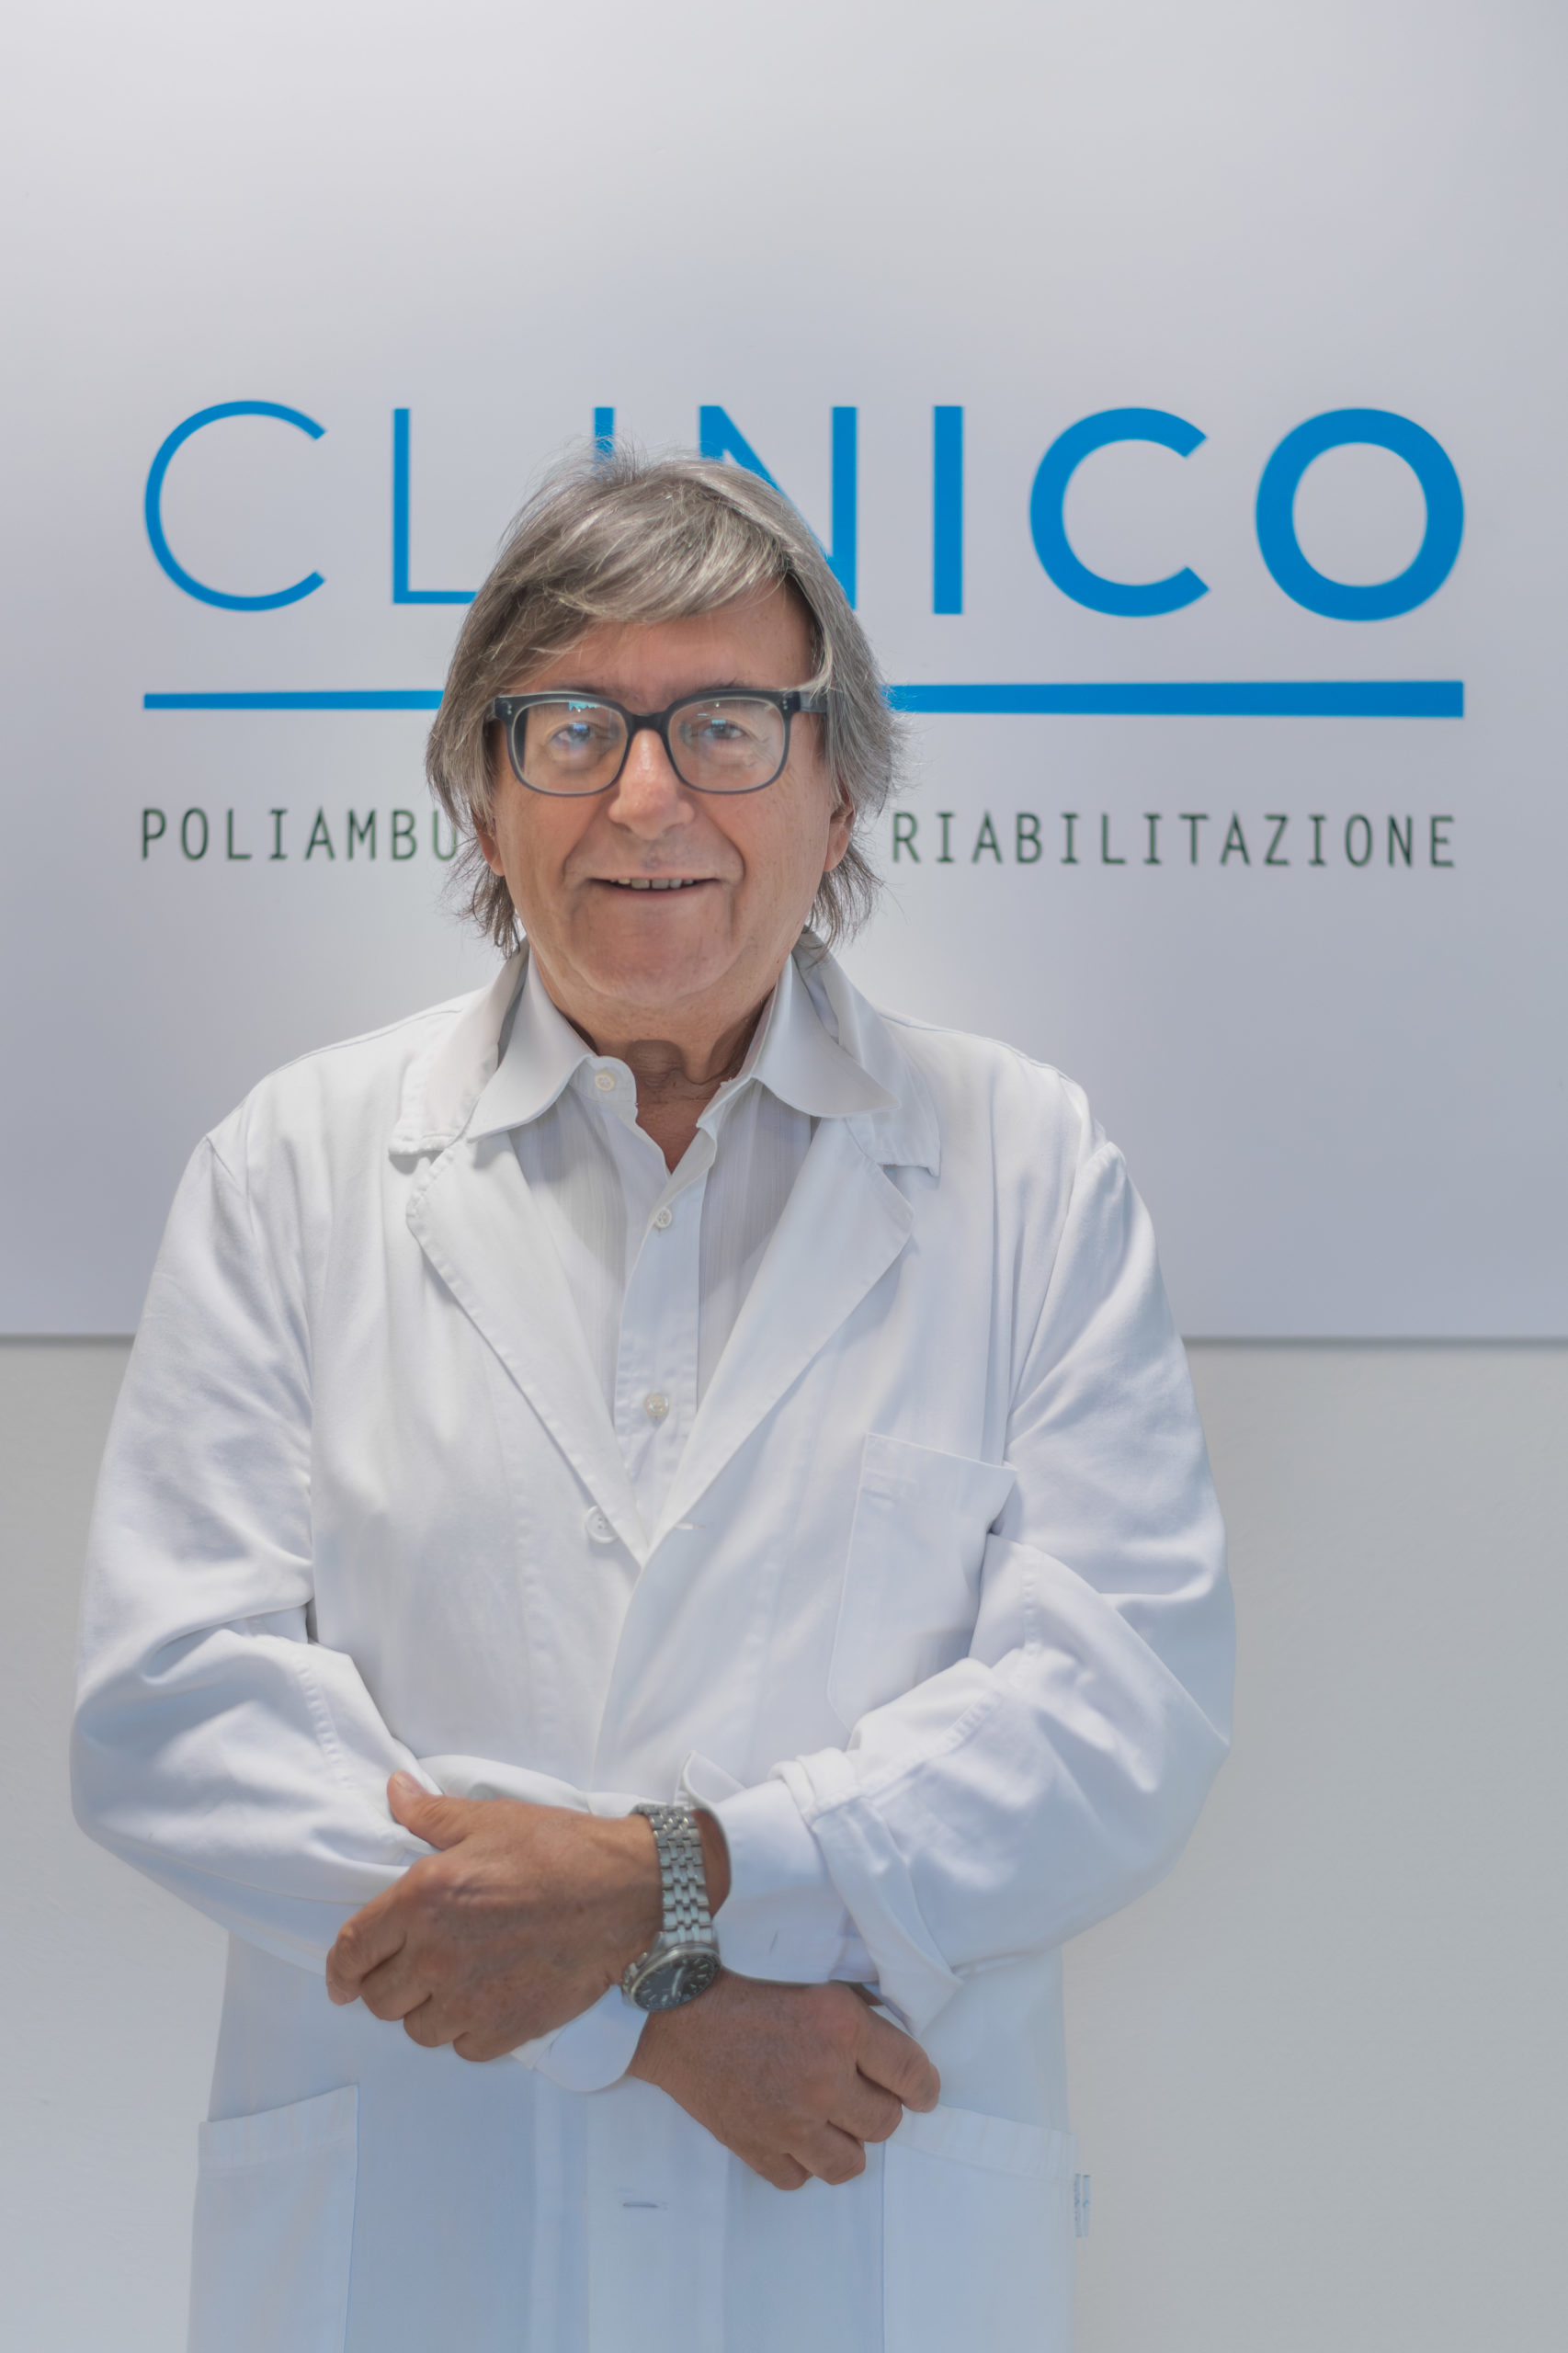 Dr. Bottini Alberto